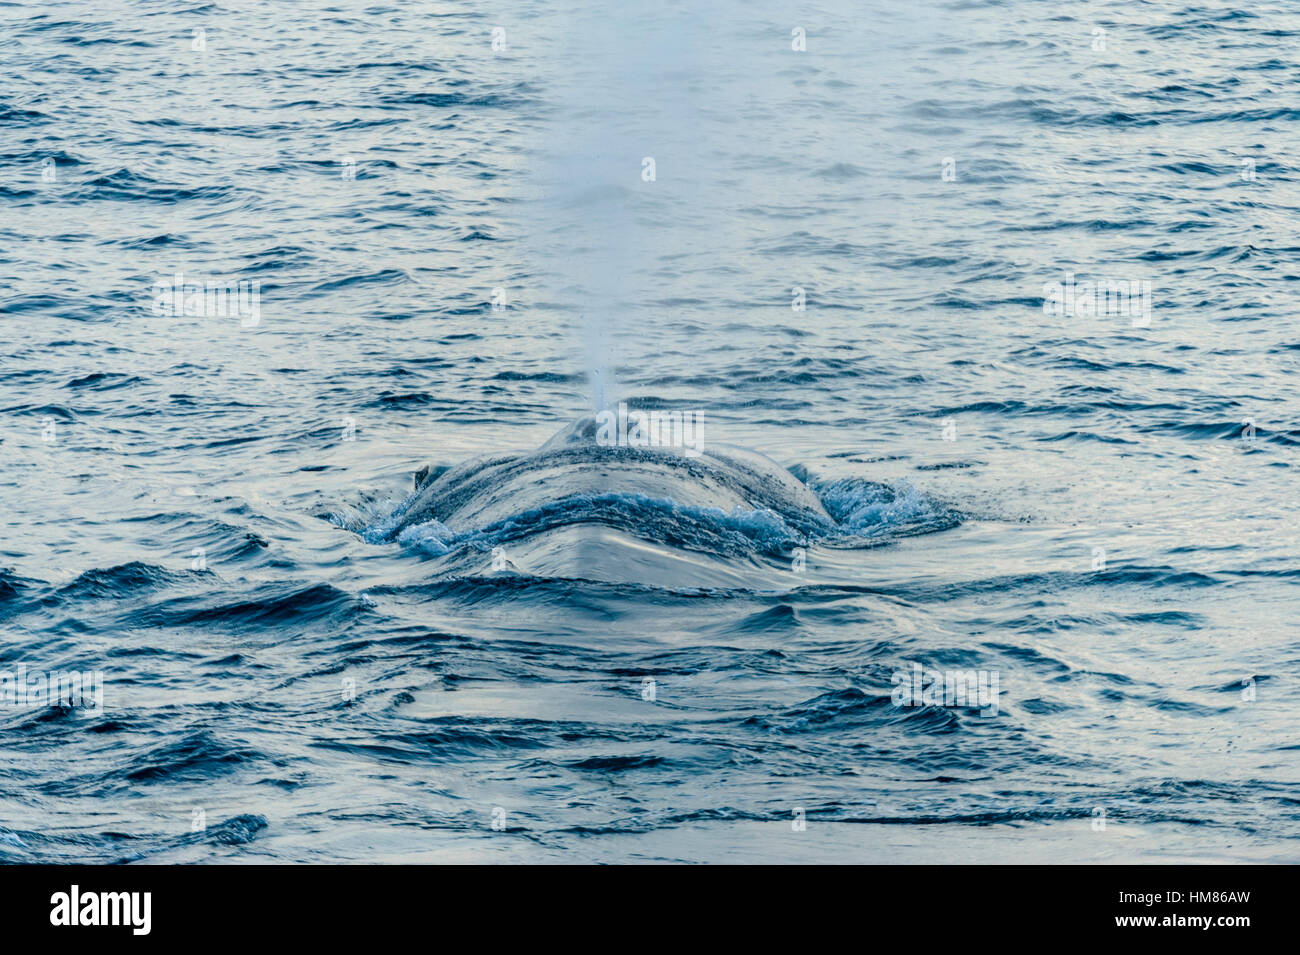 Une gigantesque baleine bleue surfaces à expirez et respirer à travers son évent. Banque D'Images